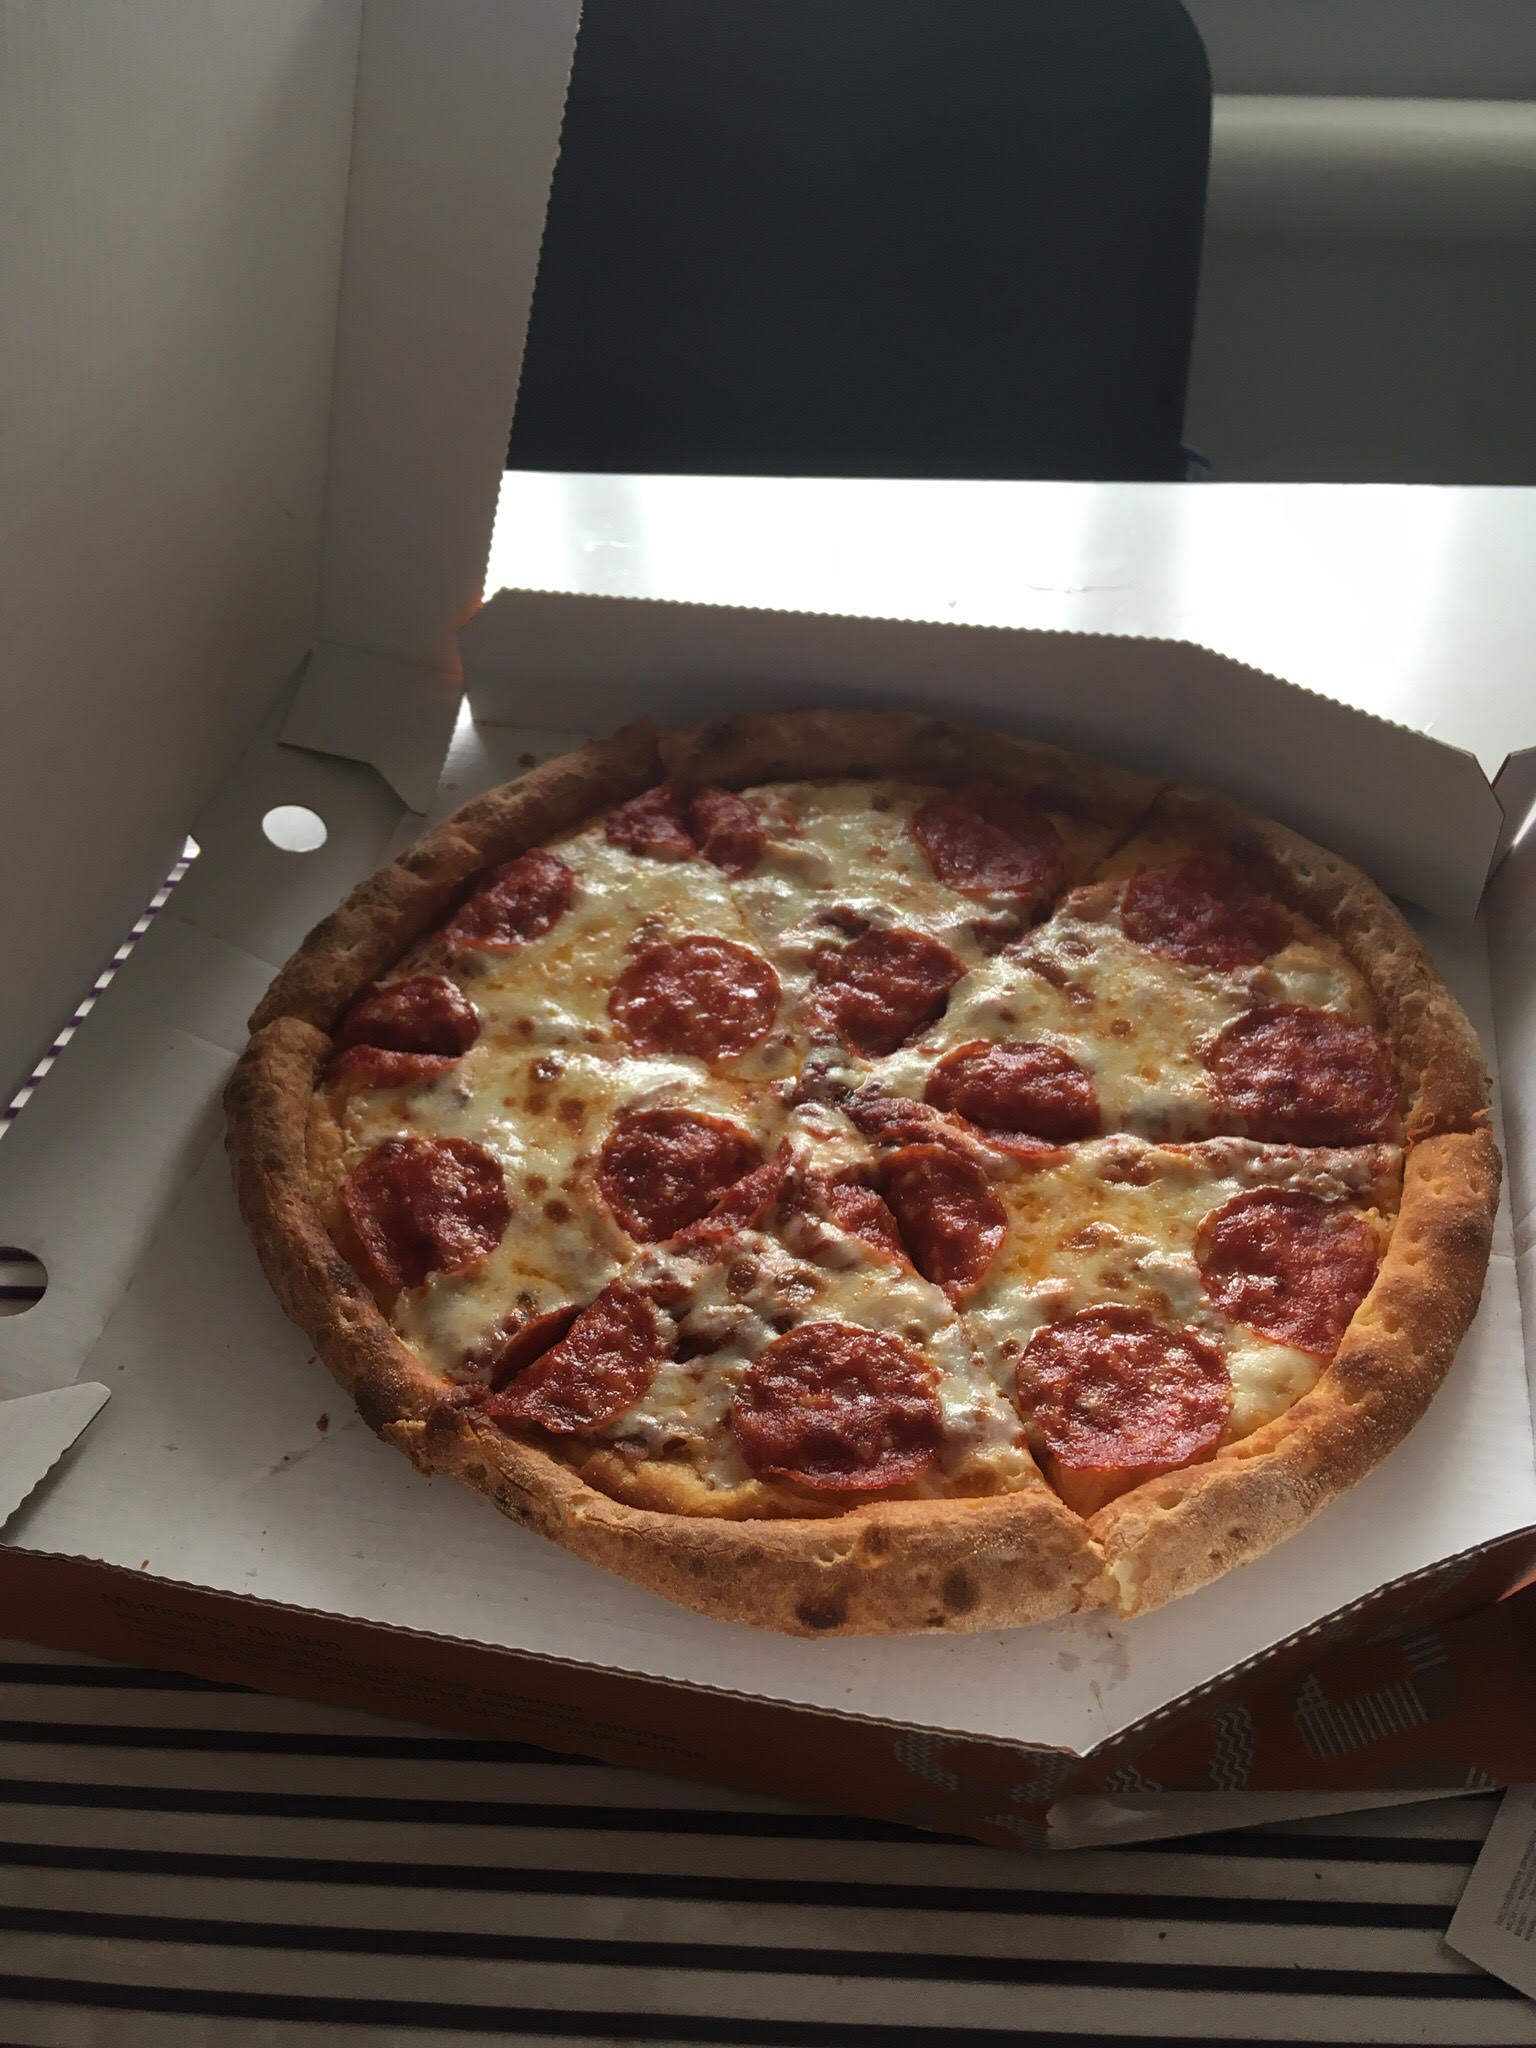 состав додо пиццы пепперони фото 82